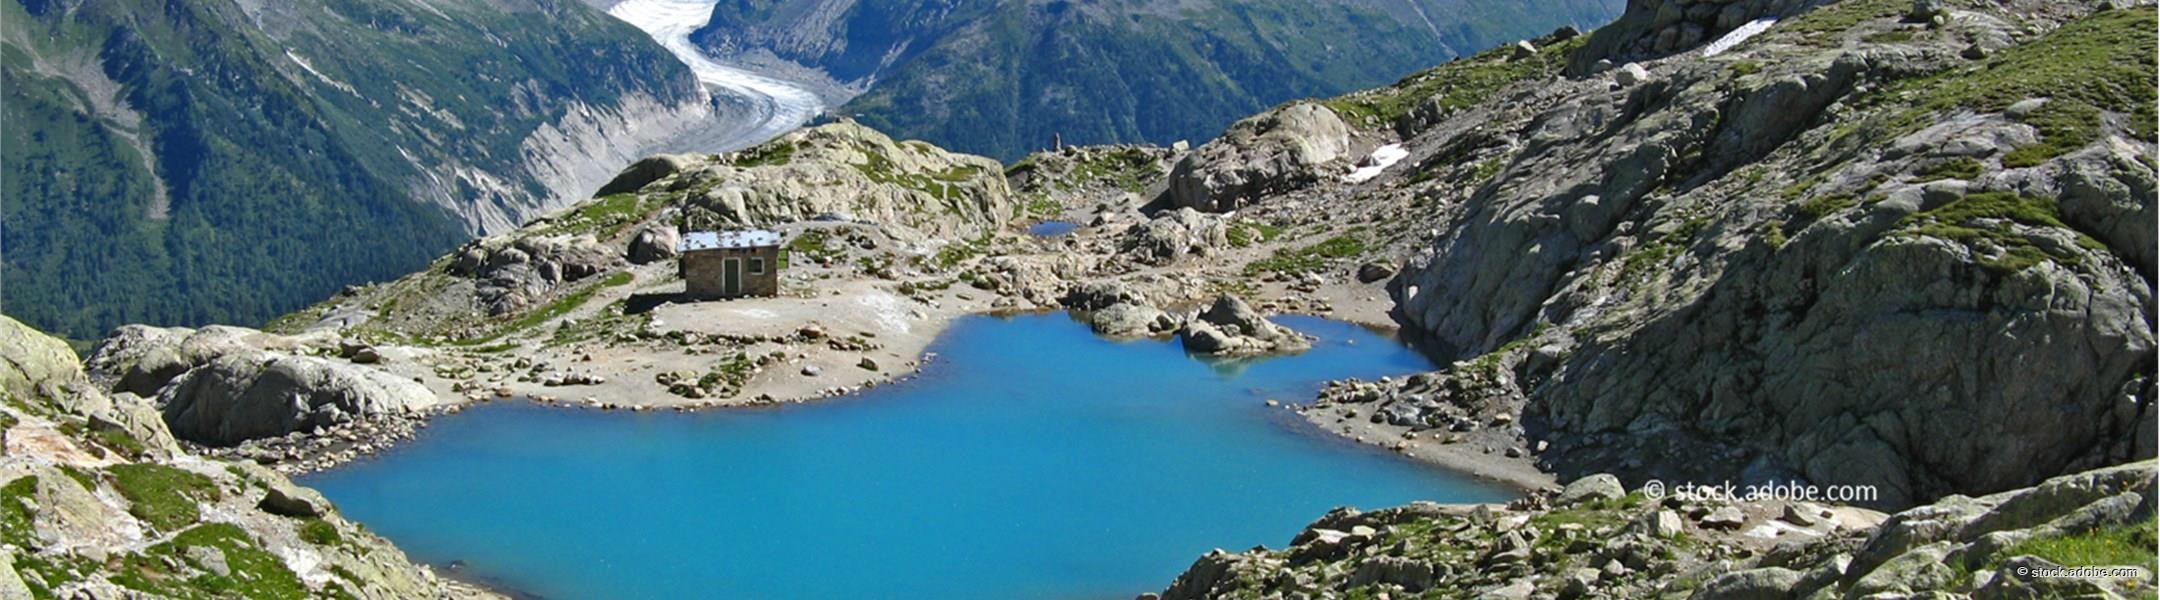 Lac Blanc bei Chamonix 